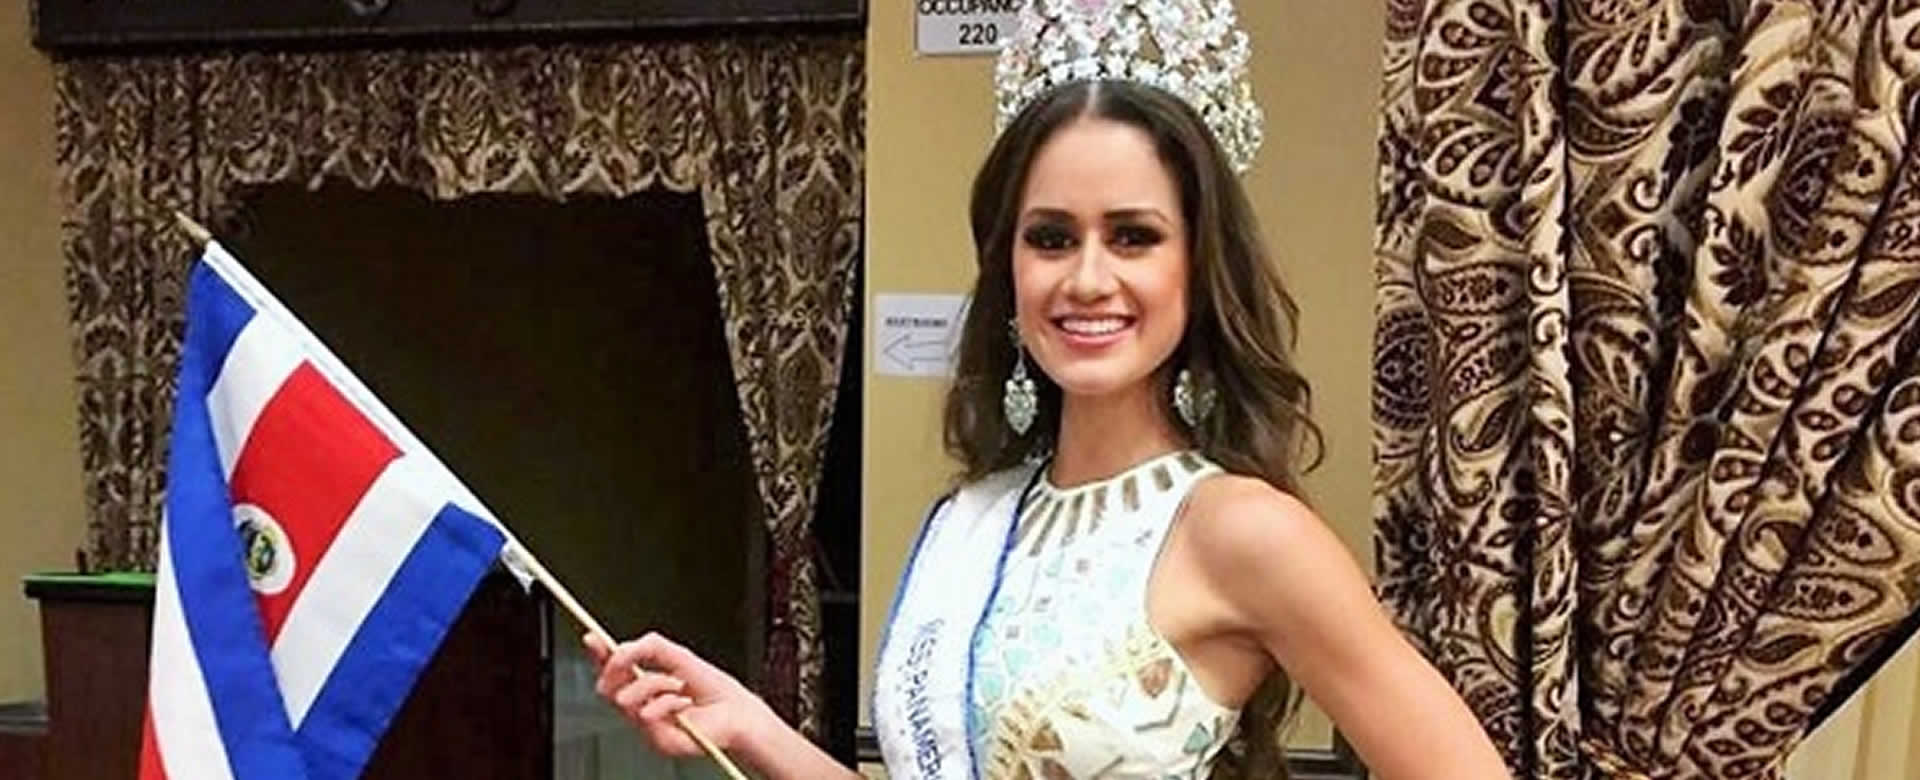 Miss de Costa Rica visita diferentes sitios turísticos de Nicaragua